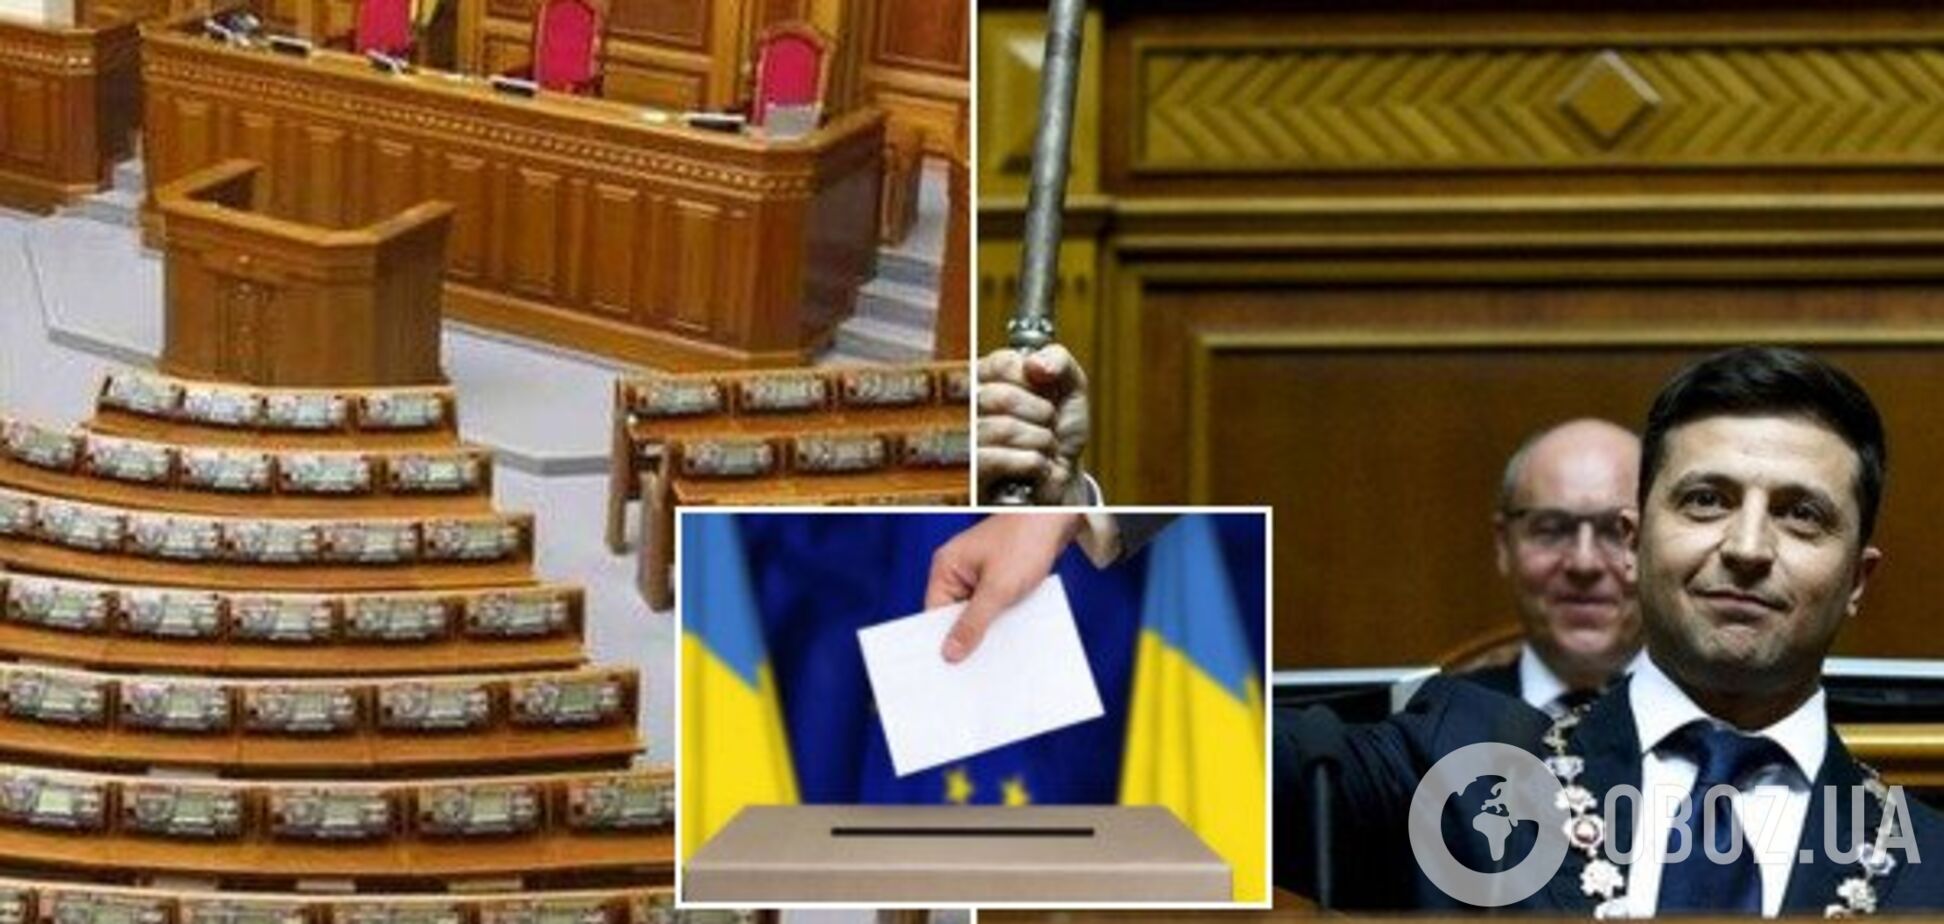  В Украине стартовала избирательная кампания в Раду: все детали